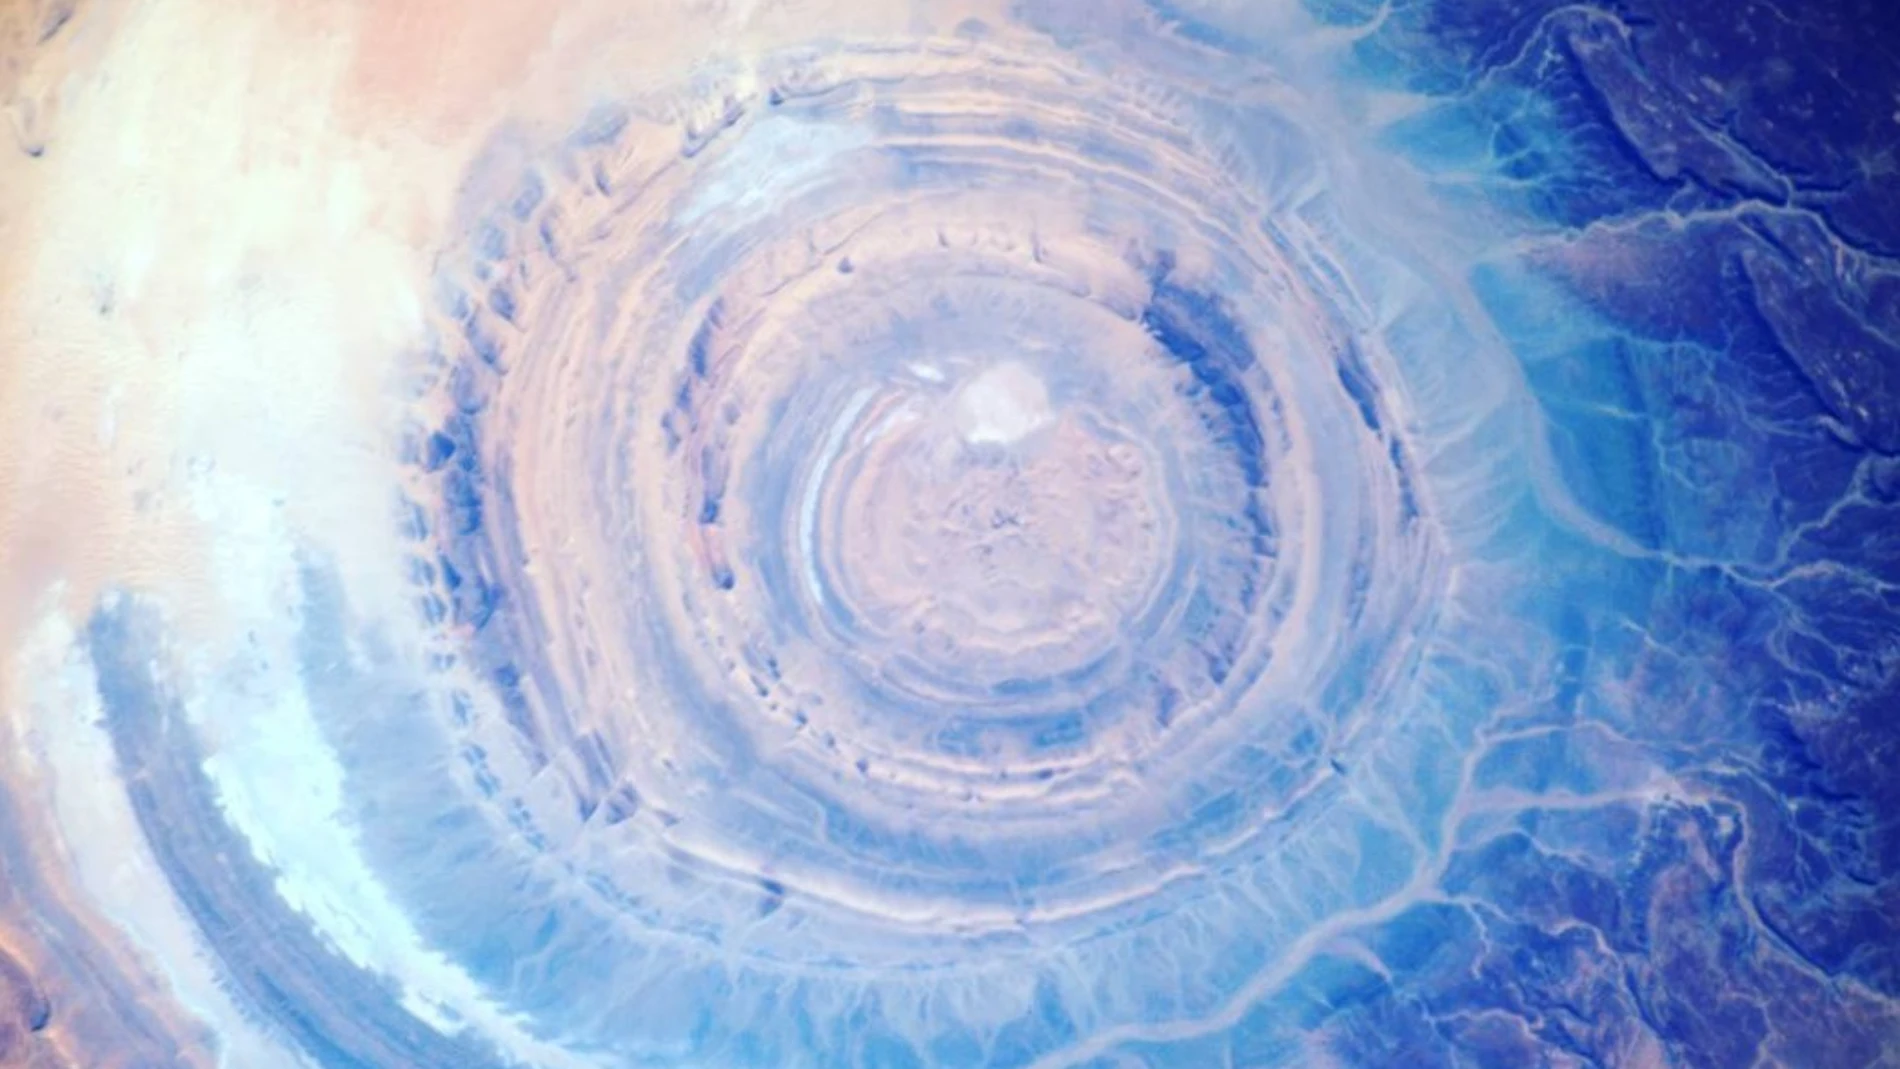 Fotografía del "Ojo del Sahara" tomada por el astronauta francés Thomas Pesquet y compartida a través de su cuenta de Instagram | Fuente: @thom_astro